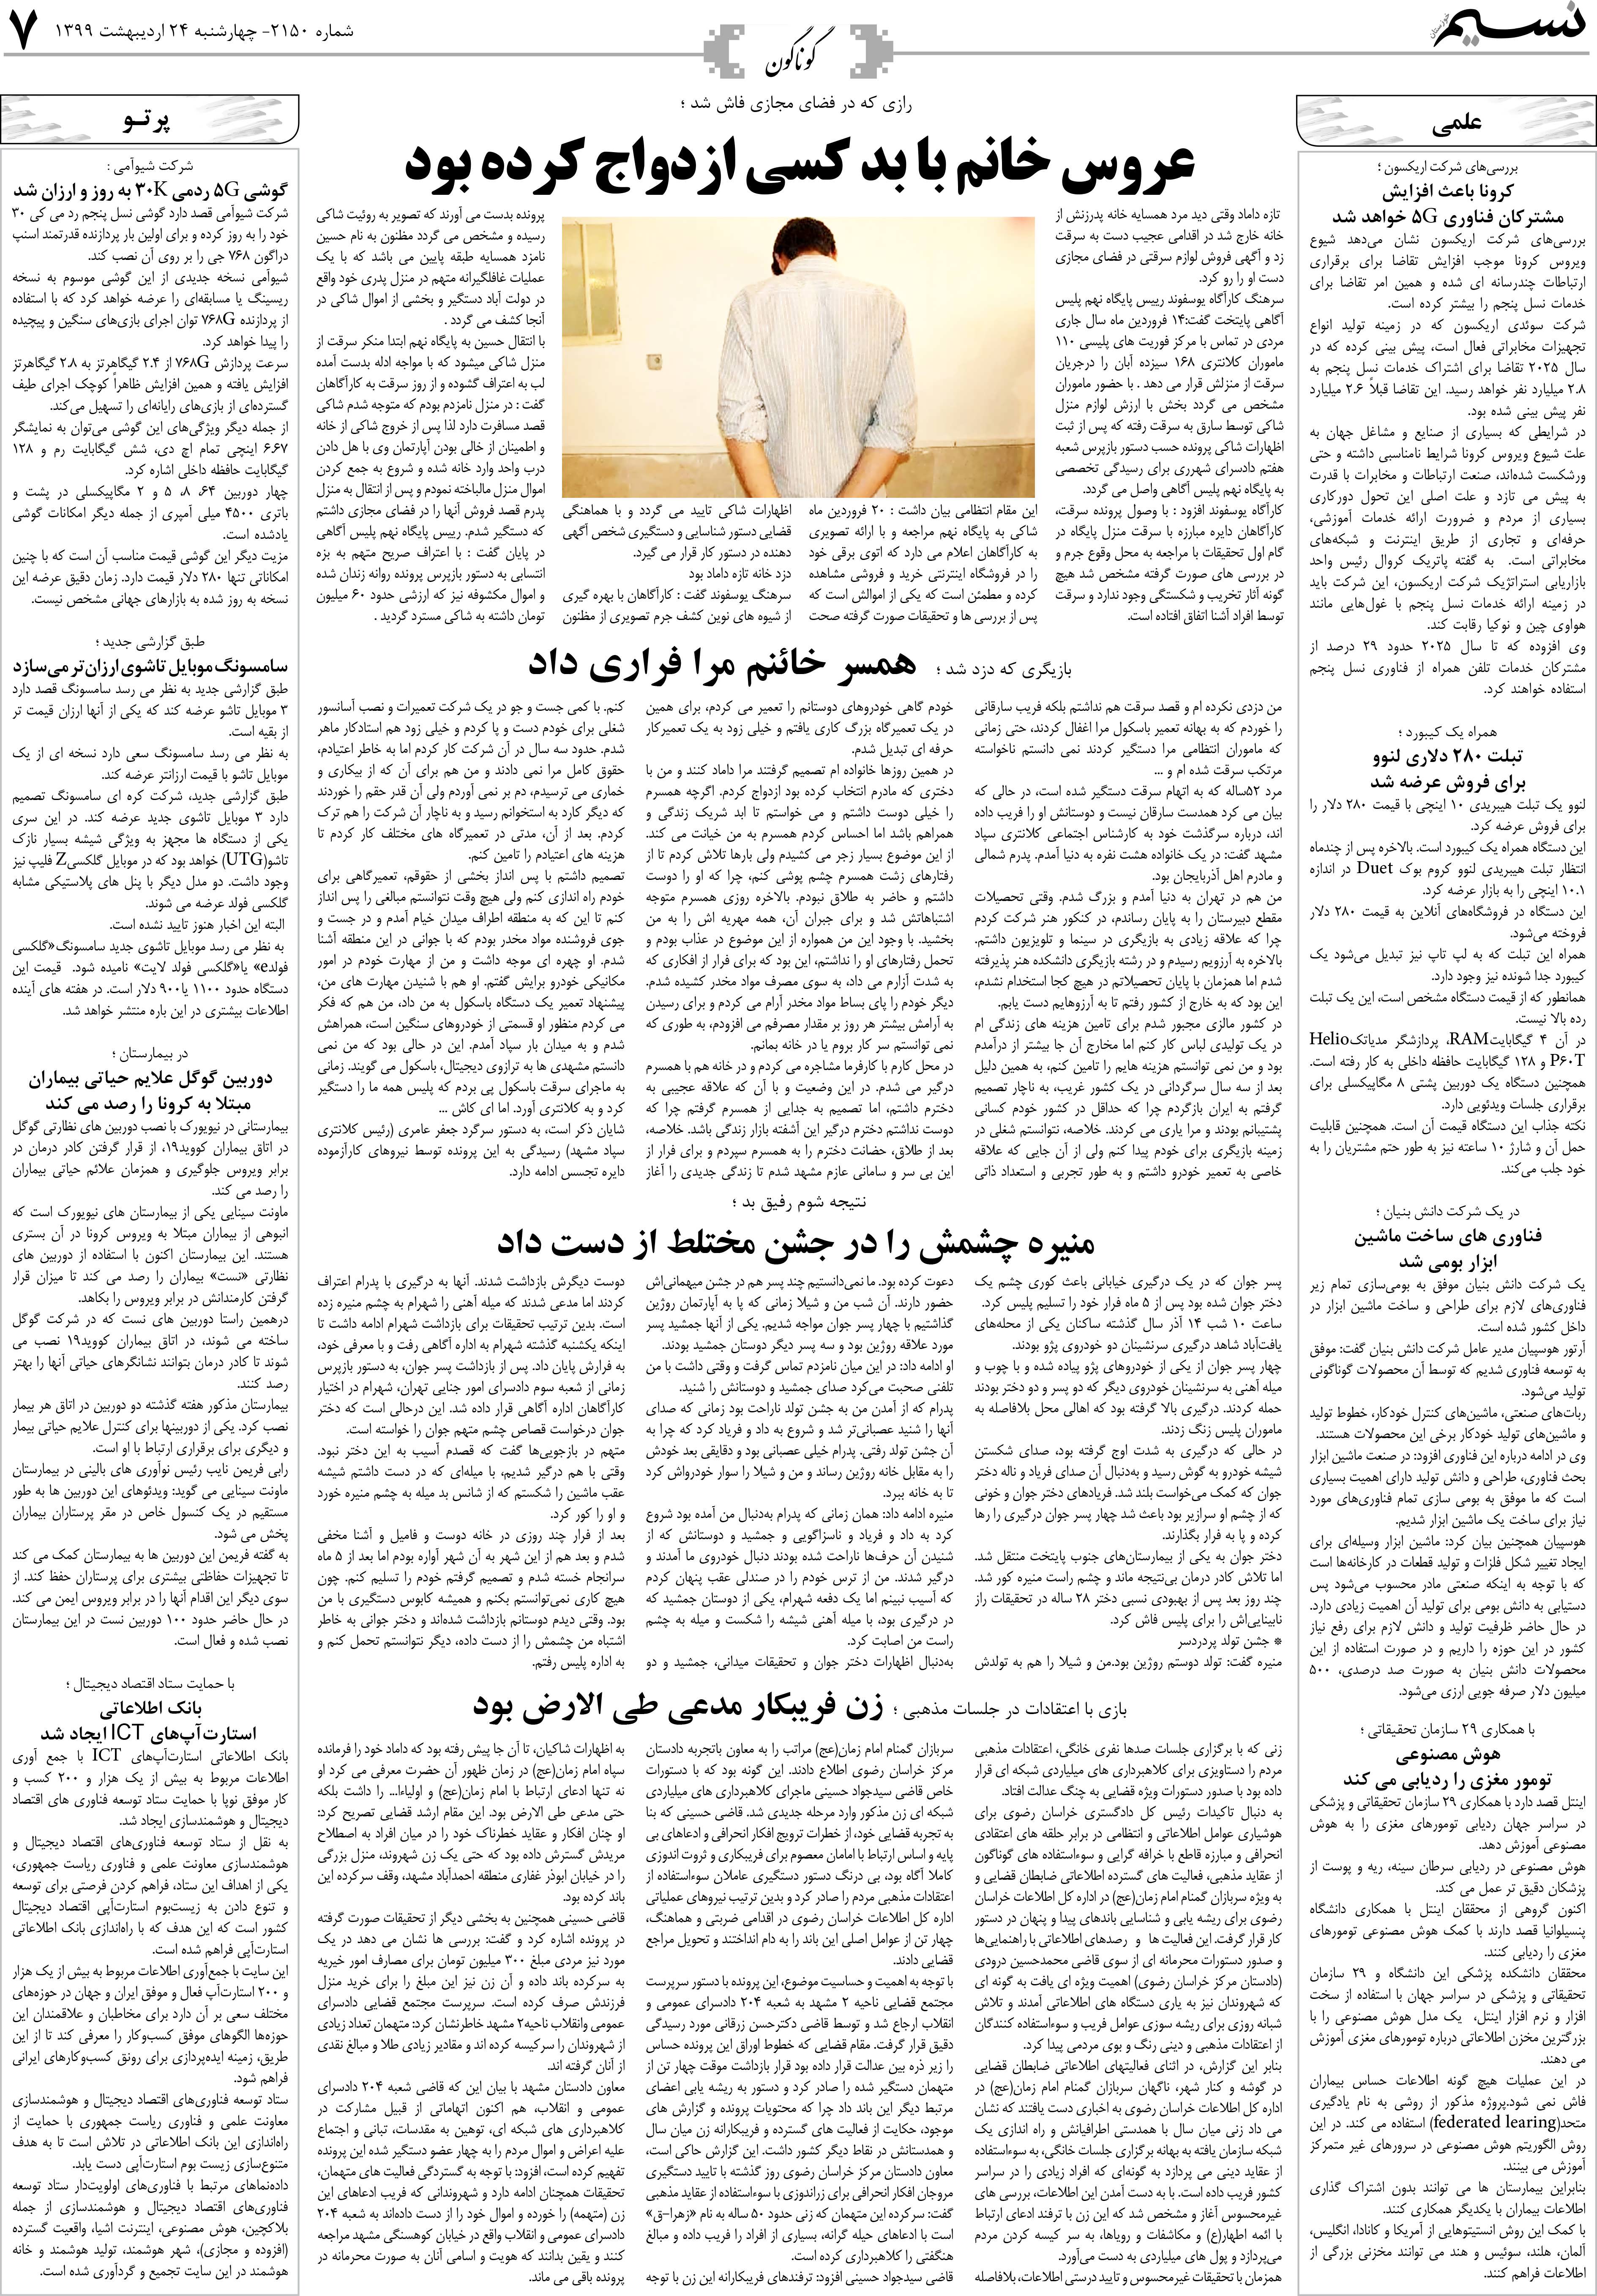 صفحه گوناگون روزنامه نسیم شماره 2150